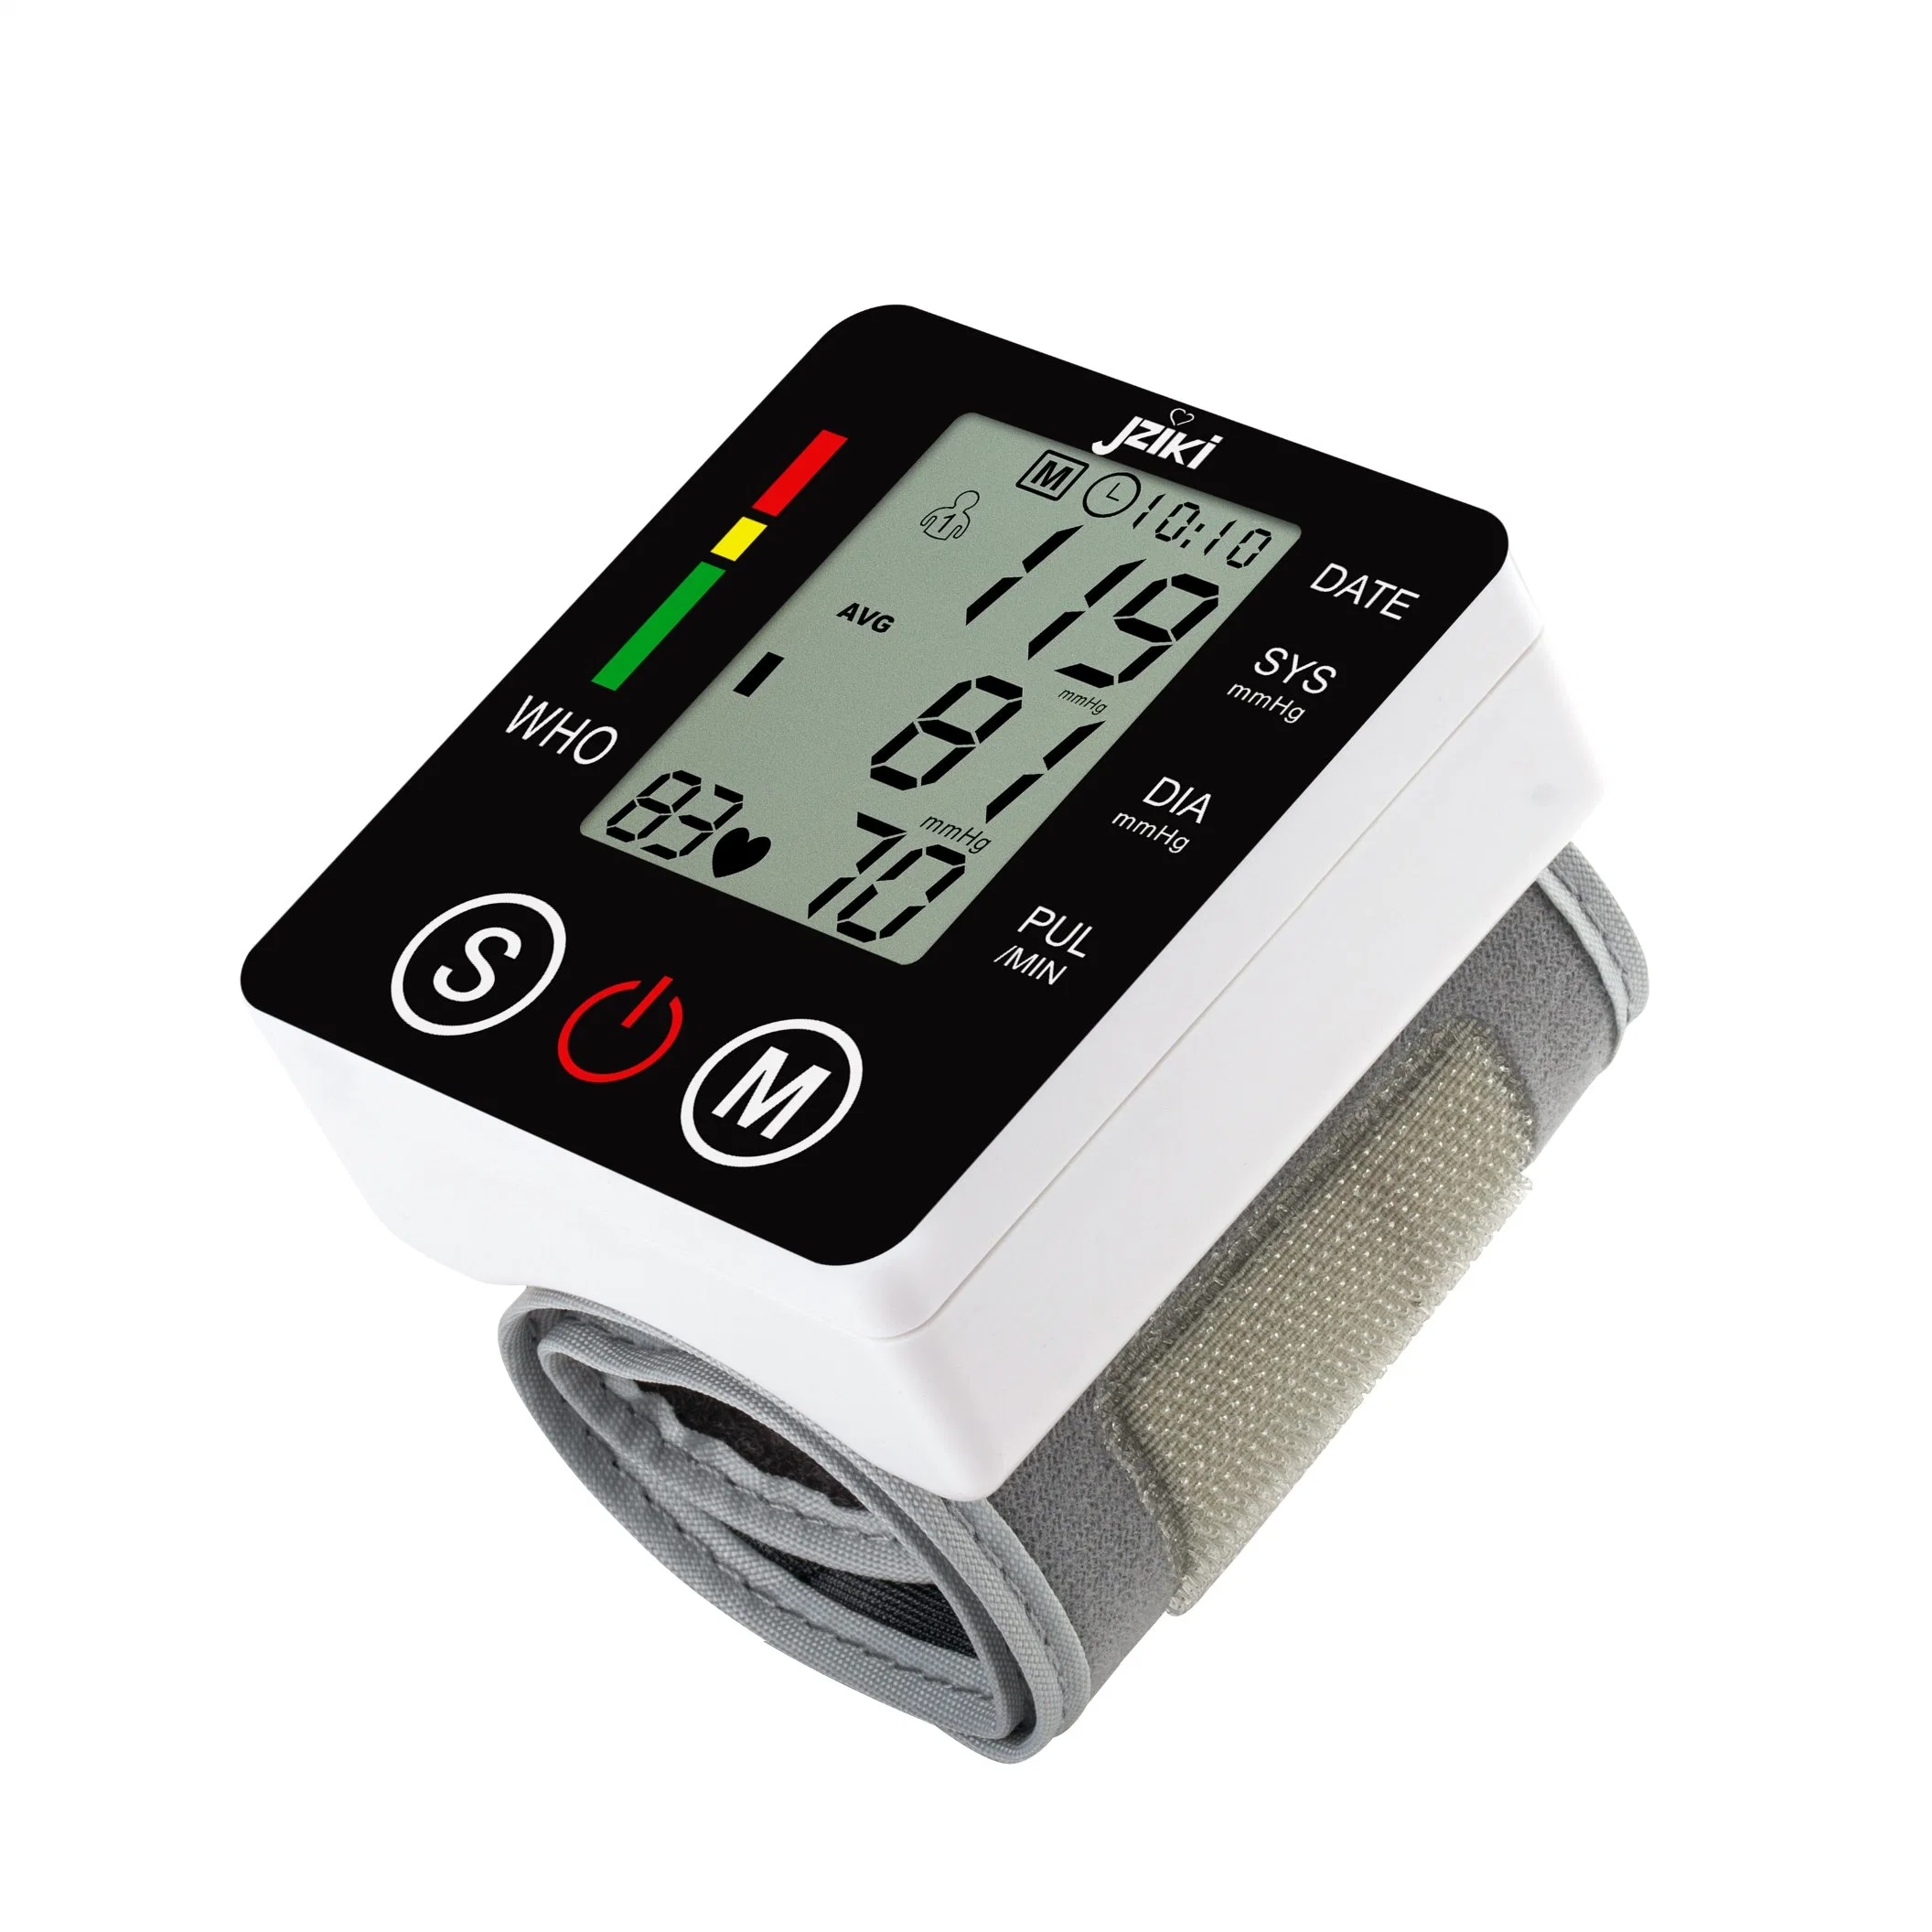 OEM Watch to Measure Blood Pressure for Electric Blood Pressure Meter